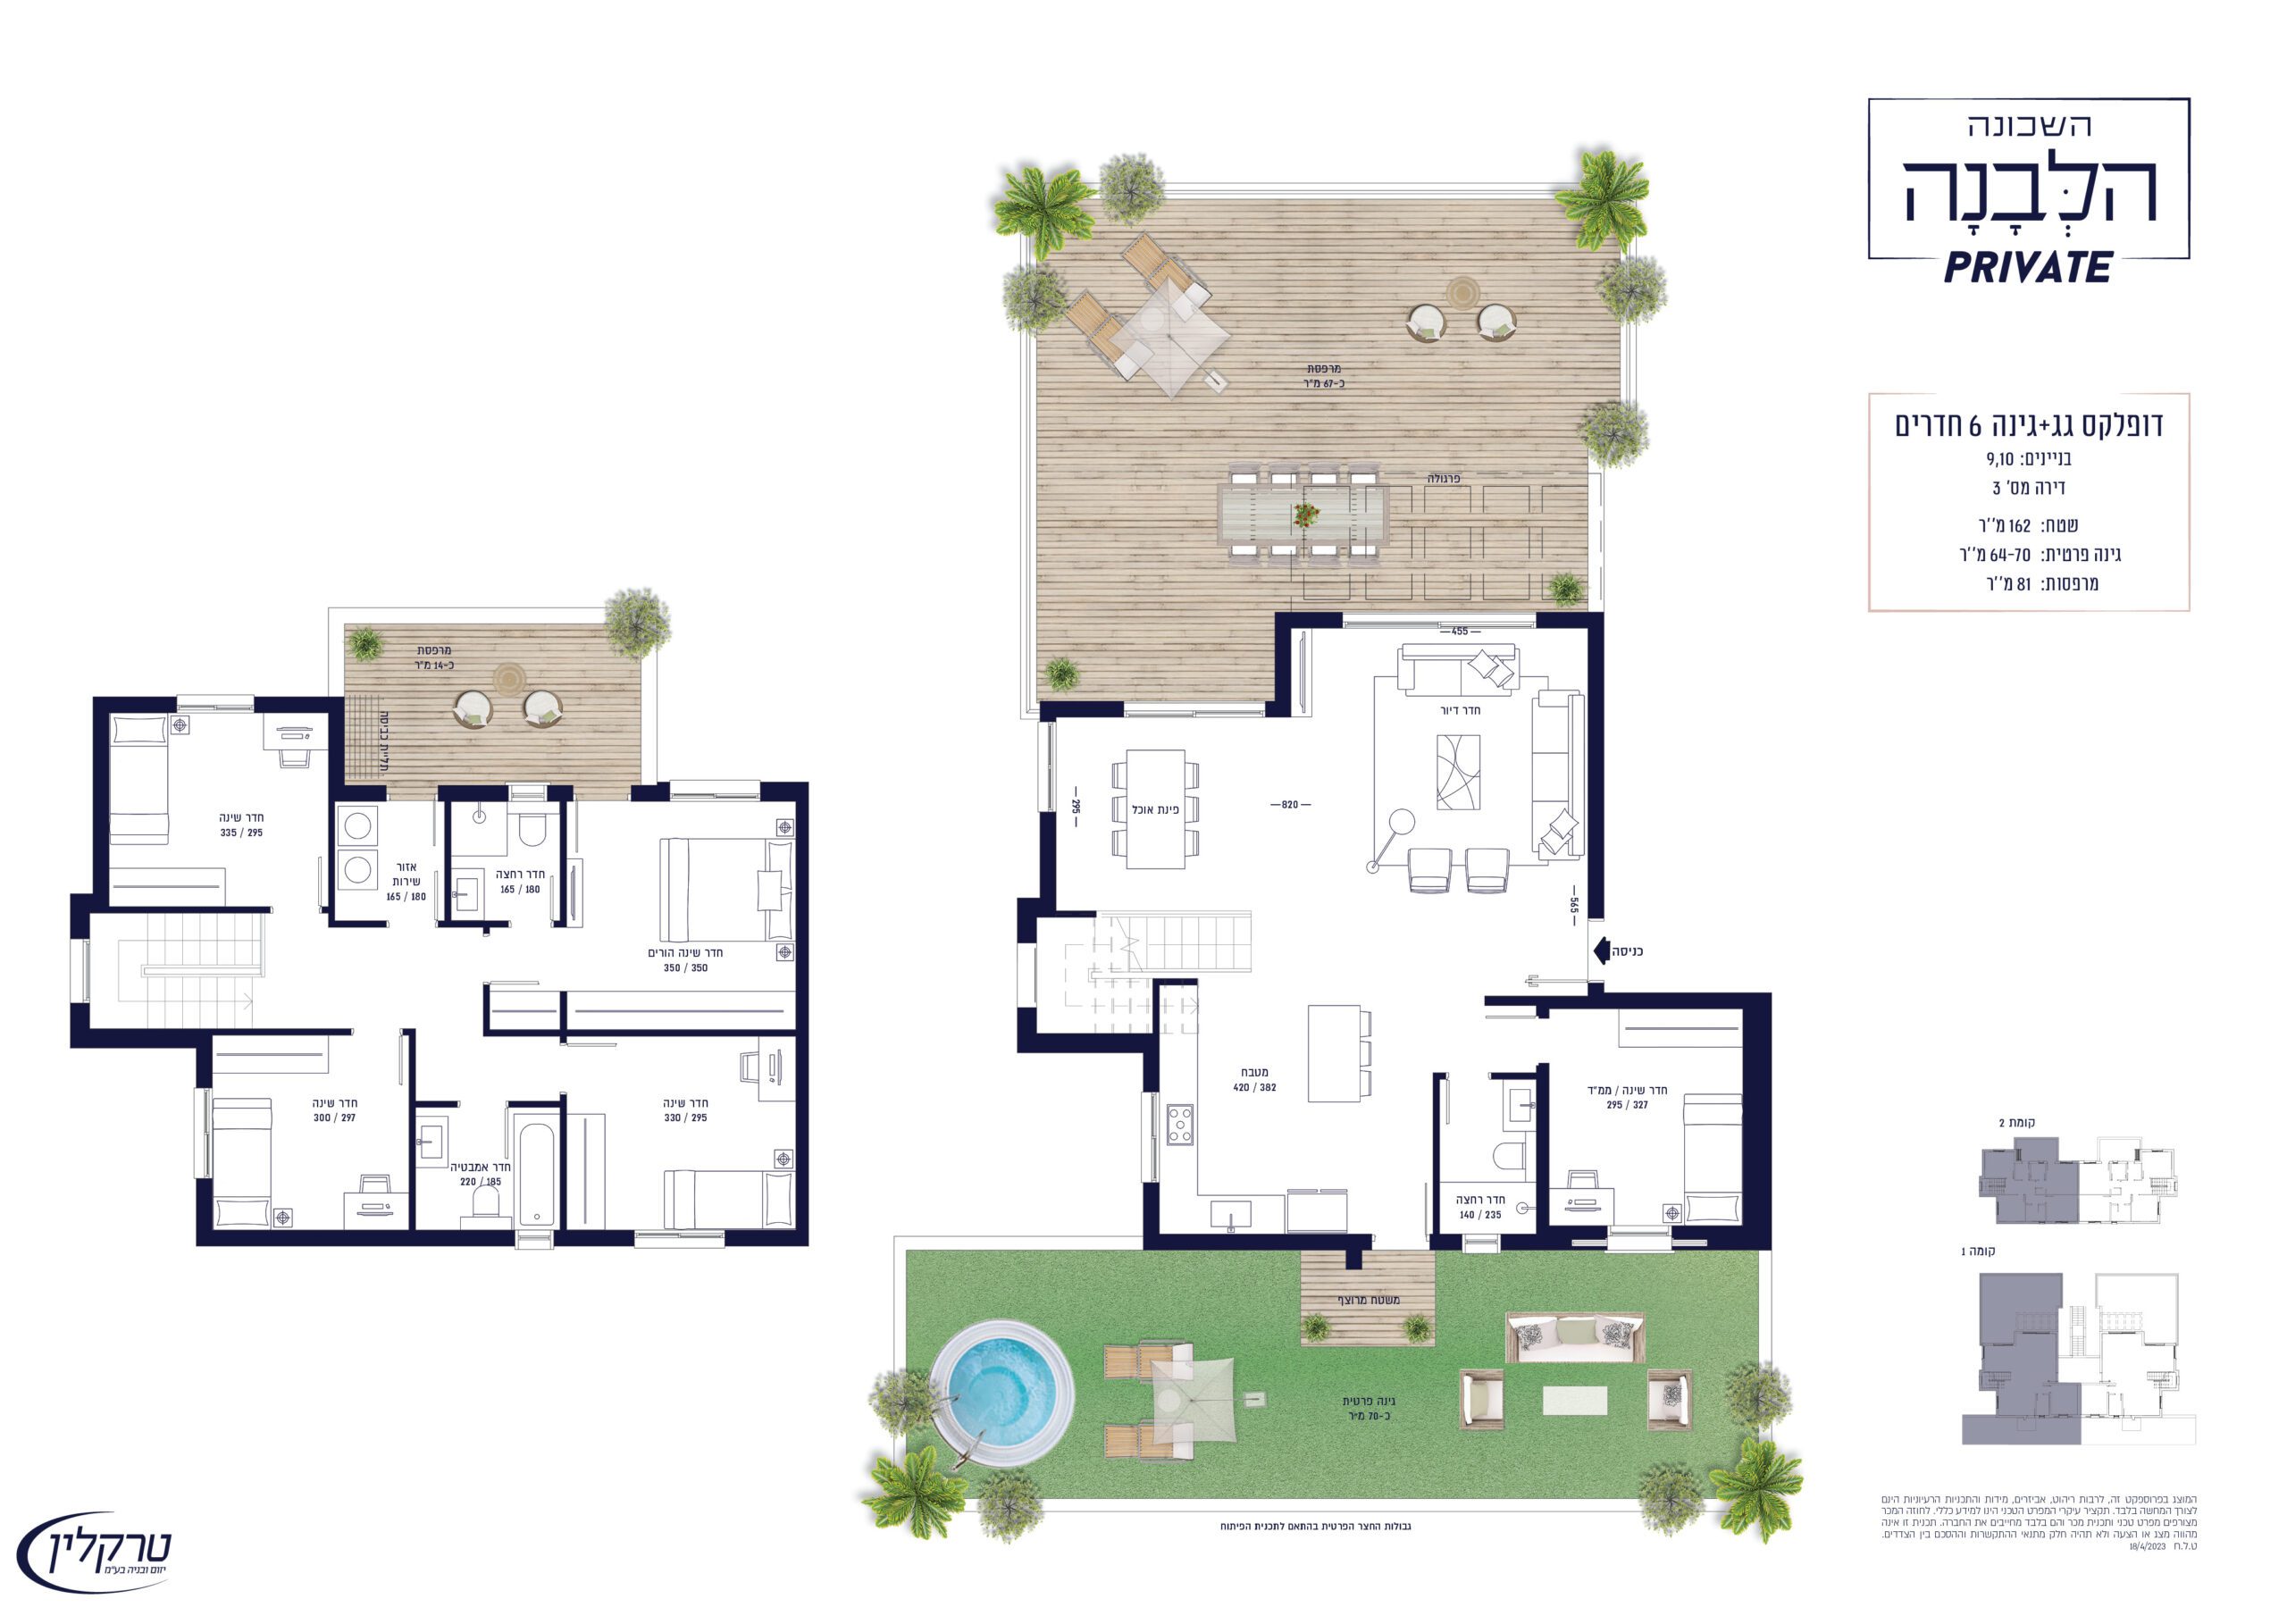 דופלקס גג + גינה 6 חדרים - בניינים 9,10 דירה מס' 3